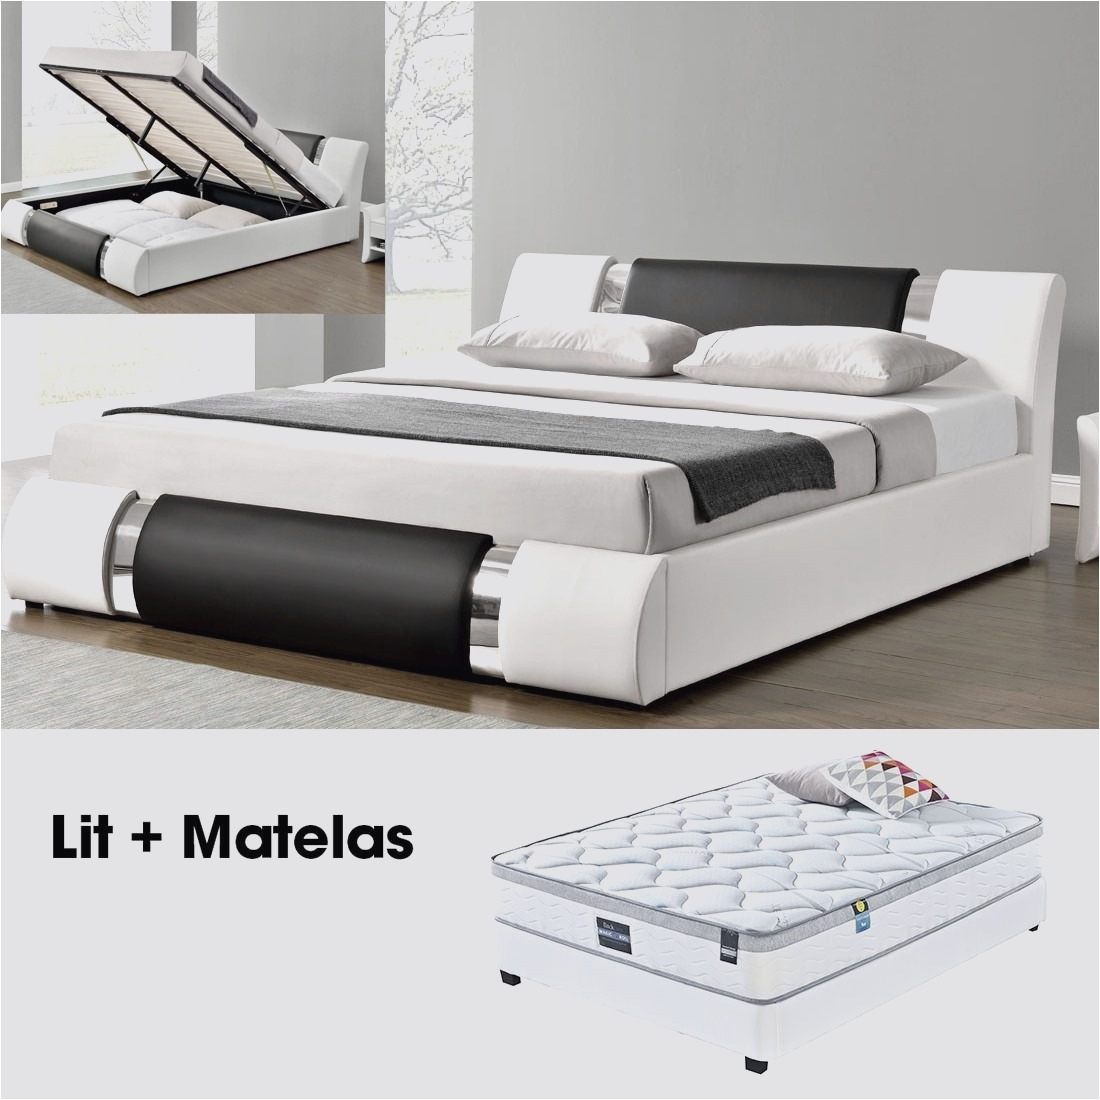 Matelas 80×200 Pour Lit Electrique Joli Matelas 80×200 Pour Lit Electrique Best Ikea Matelas 80—200 New